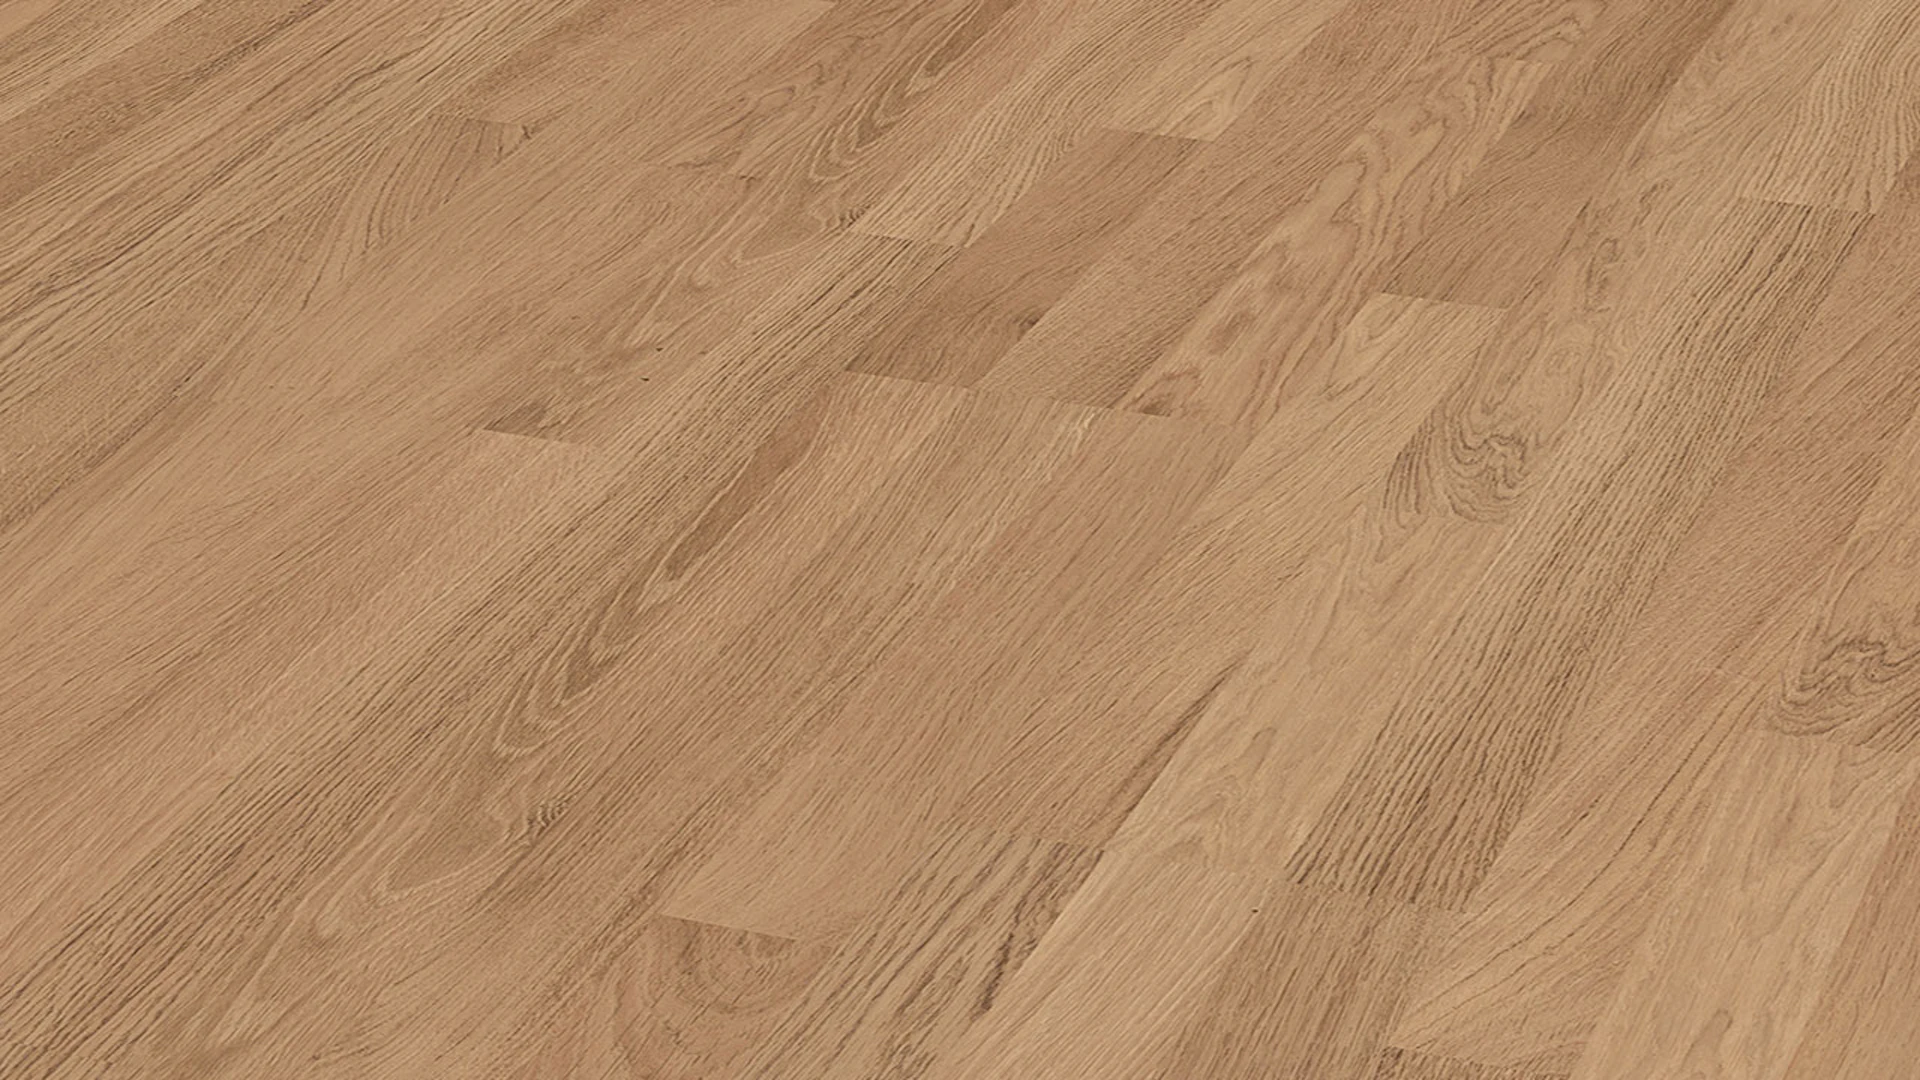 MEISTER Laminate flooring - MeisterDesign LC 55 S Oak natural 6067 (600013-1288198-06067)